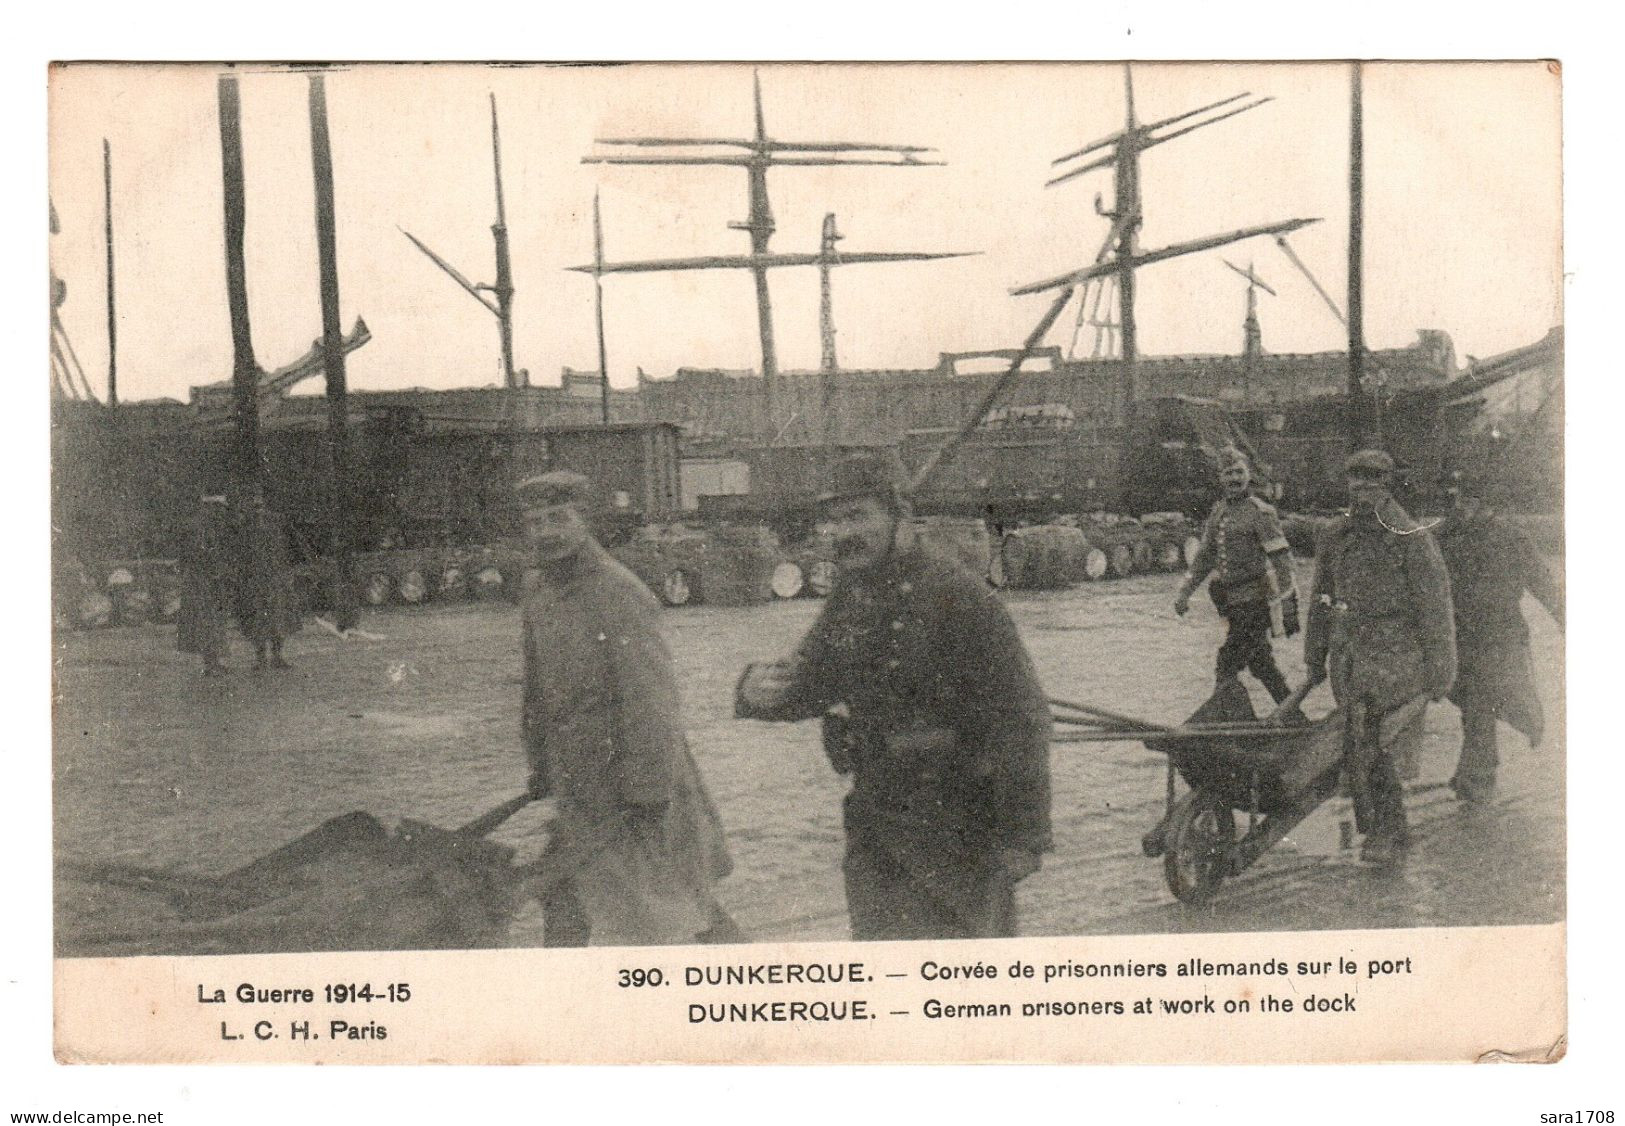 DUNKERQUE, Corvée De Prisonniers Allemands Sur Le Port. - War 1914-18